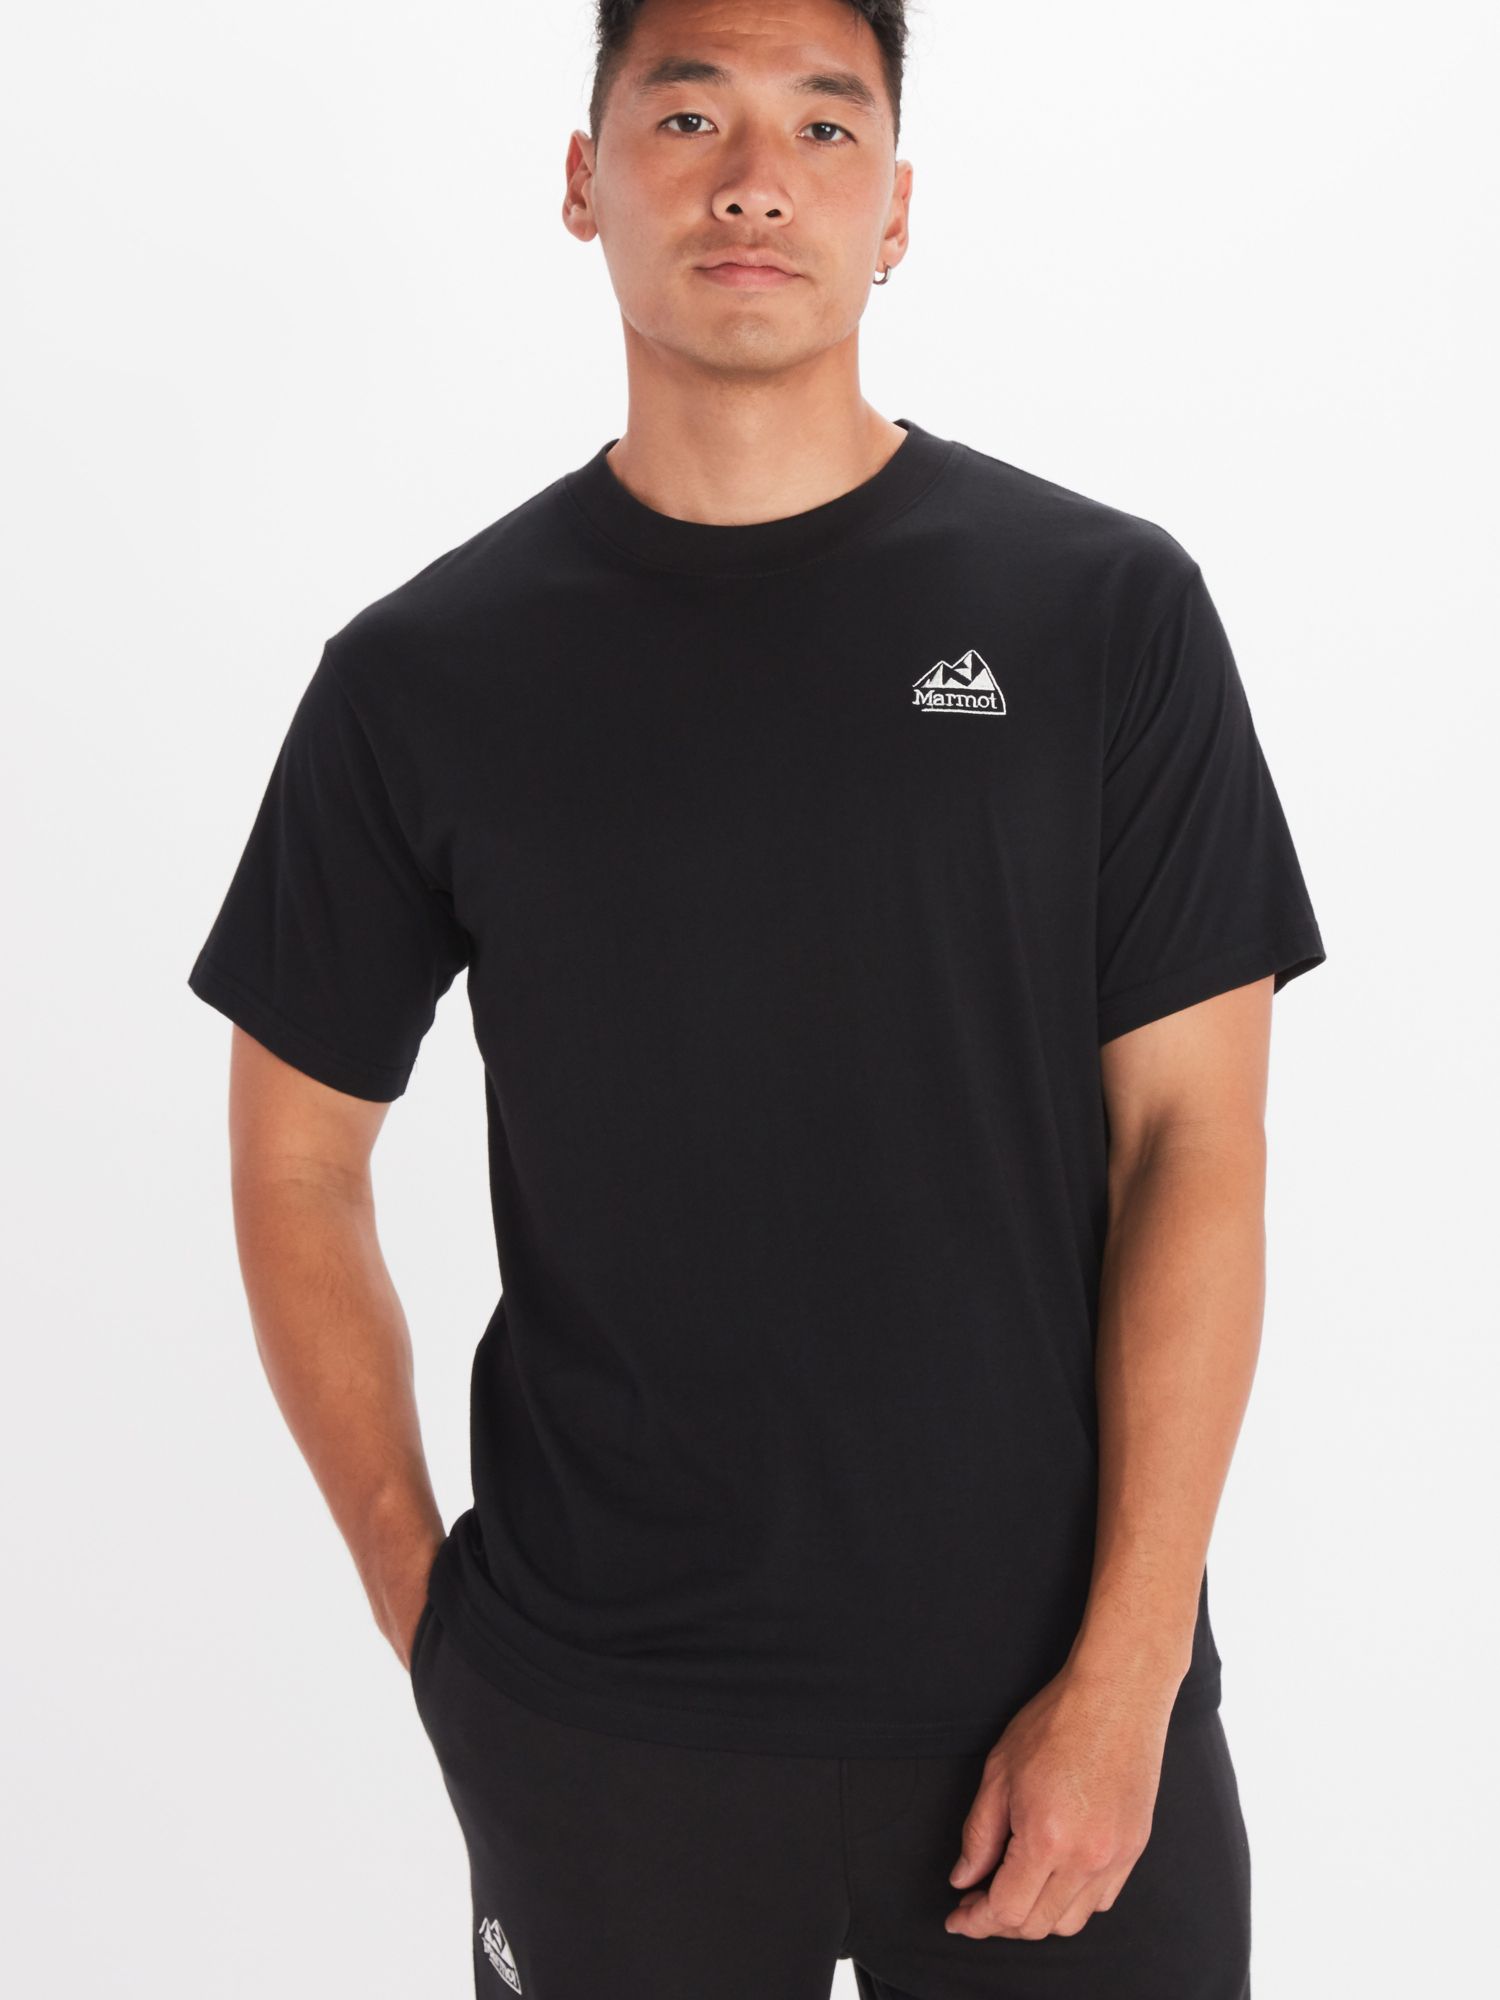 Men's Peaks Short-Sleeve T-Shirt | Marmot